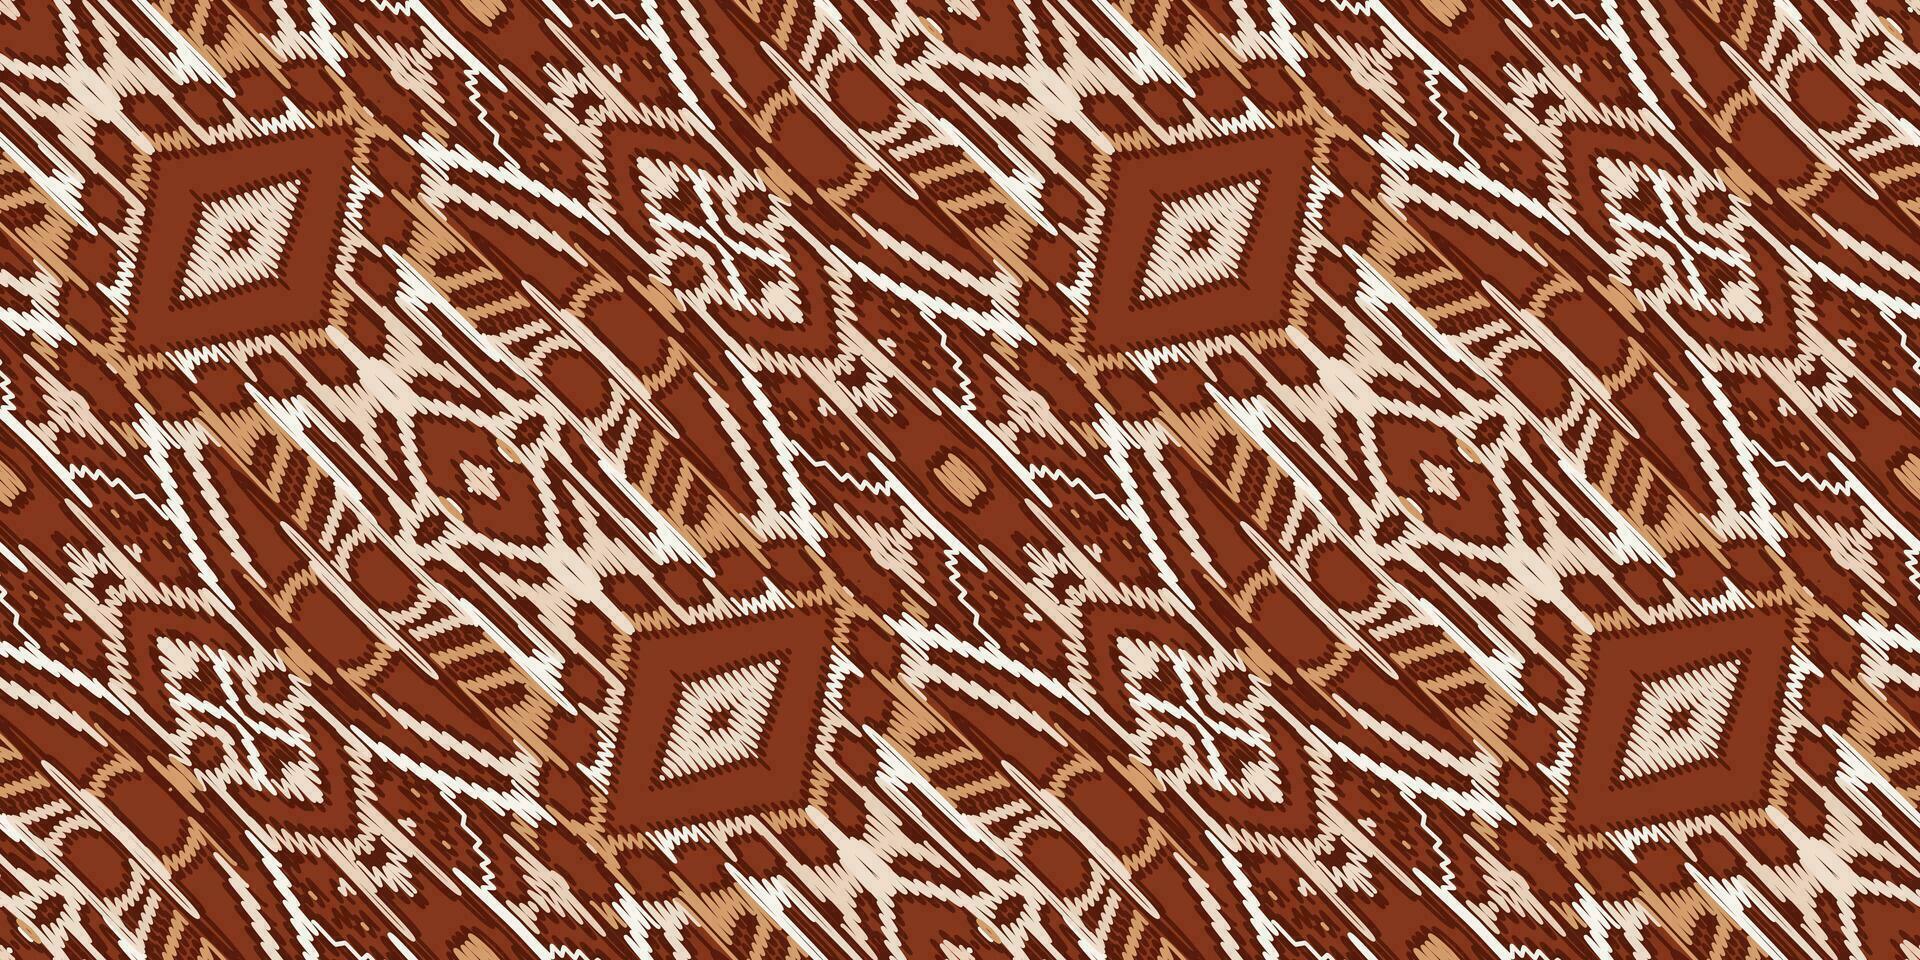 zijde kleding stof patola sari patroon naadloos mughal architectuur motief borduurwerk, ikat borduurwerk vector ontwerp voor afdrukken Egyptische patroon Tibetaans mandala bandana